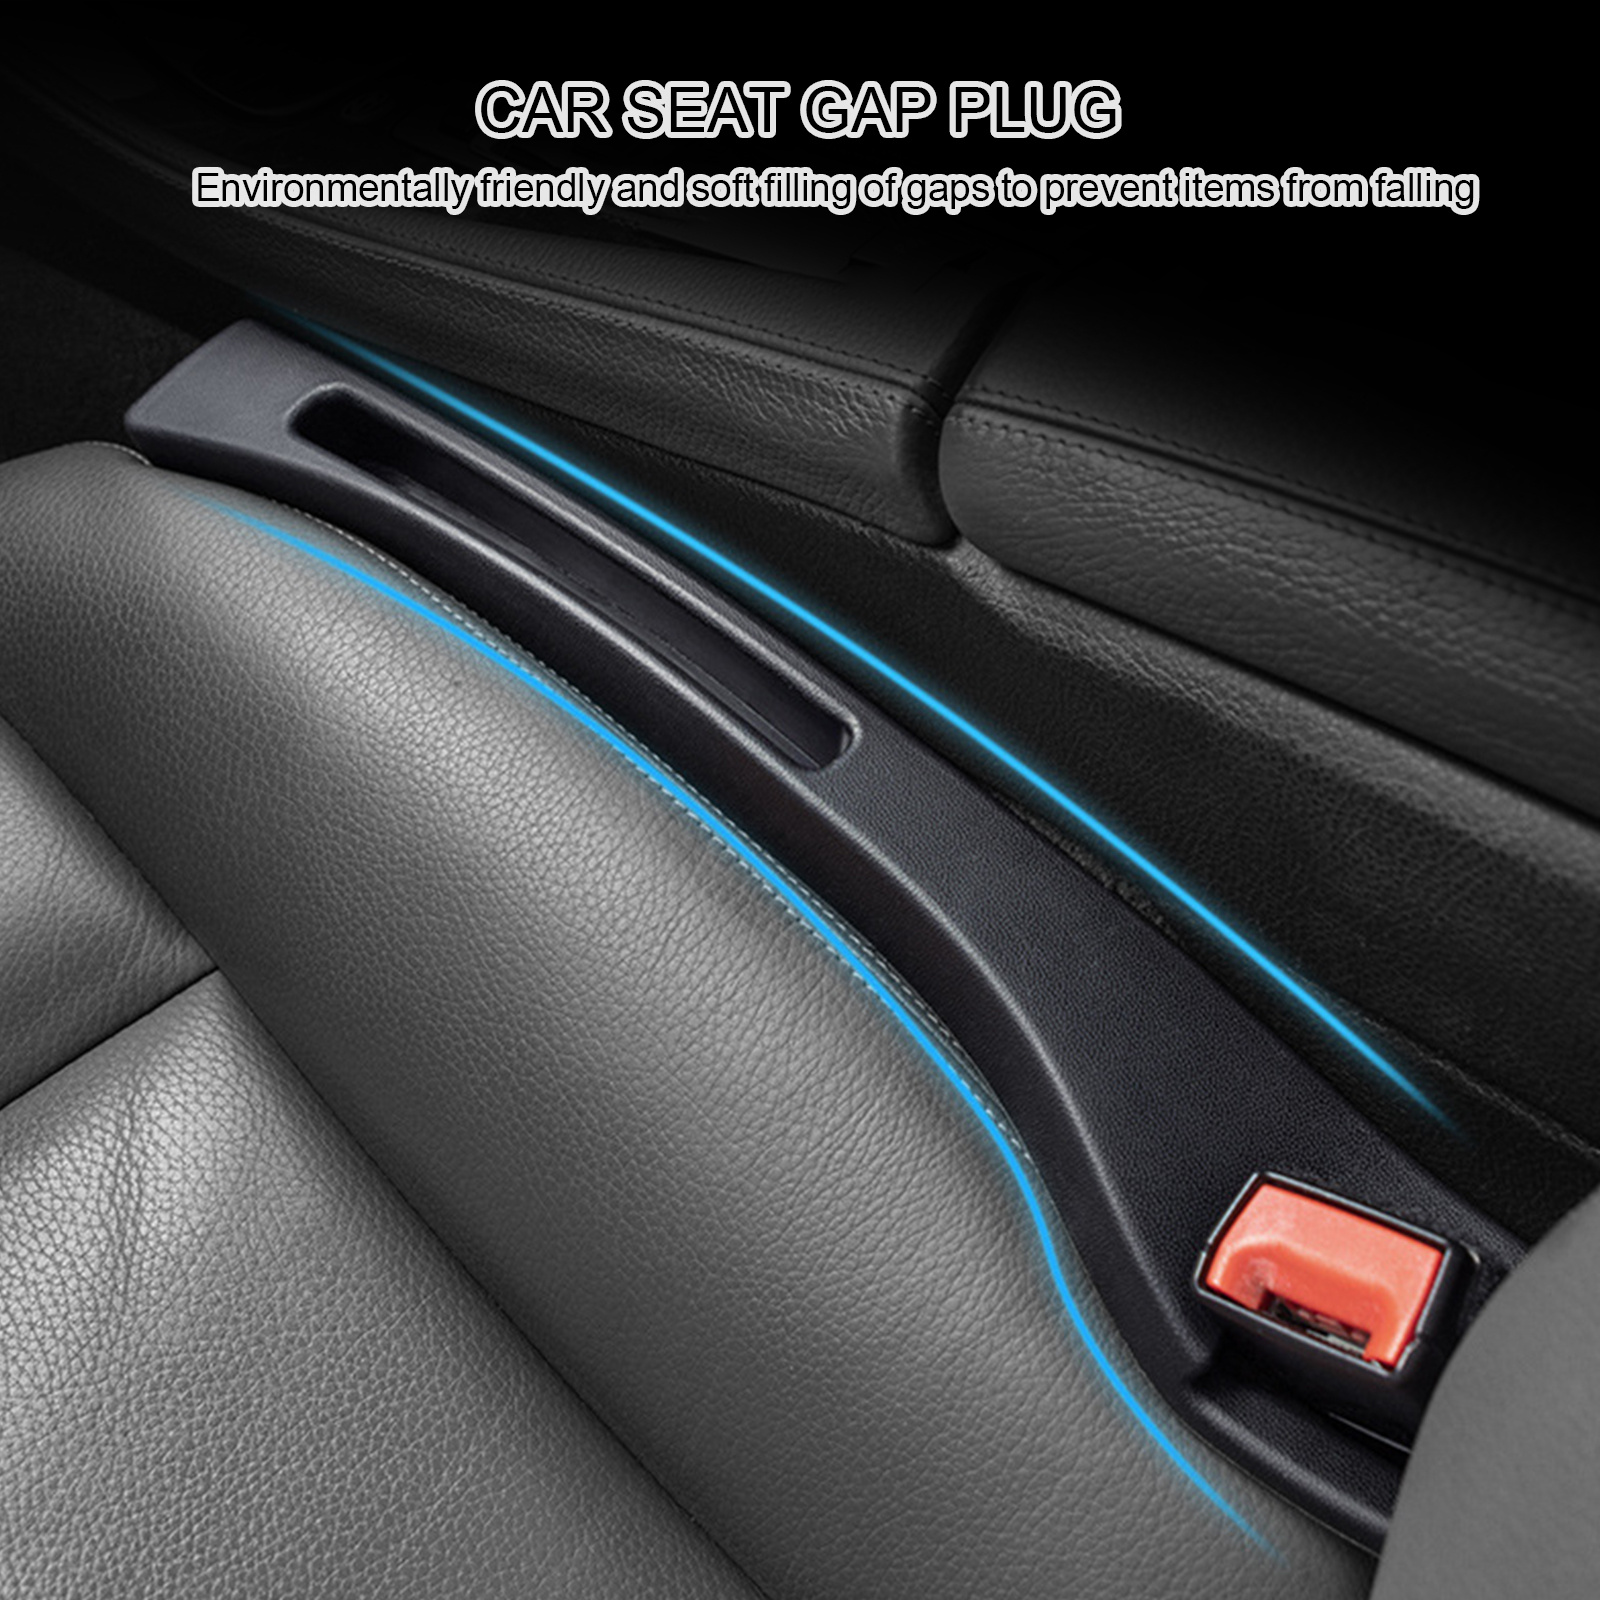 Kaufe 2PCS Autositz-Lückenfüller, auslaufsichere Steckstreifen für die  Innenaufbewahrung, verhindern